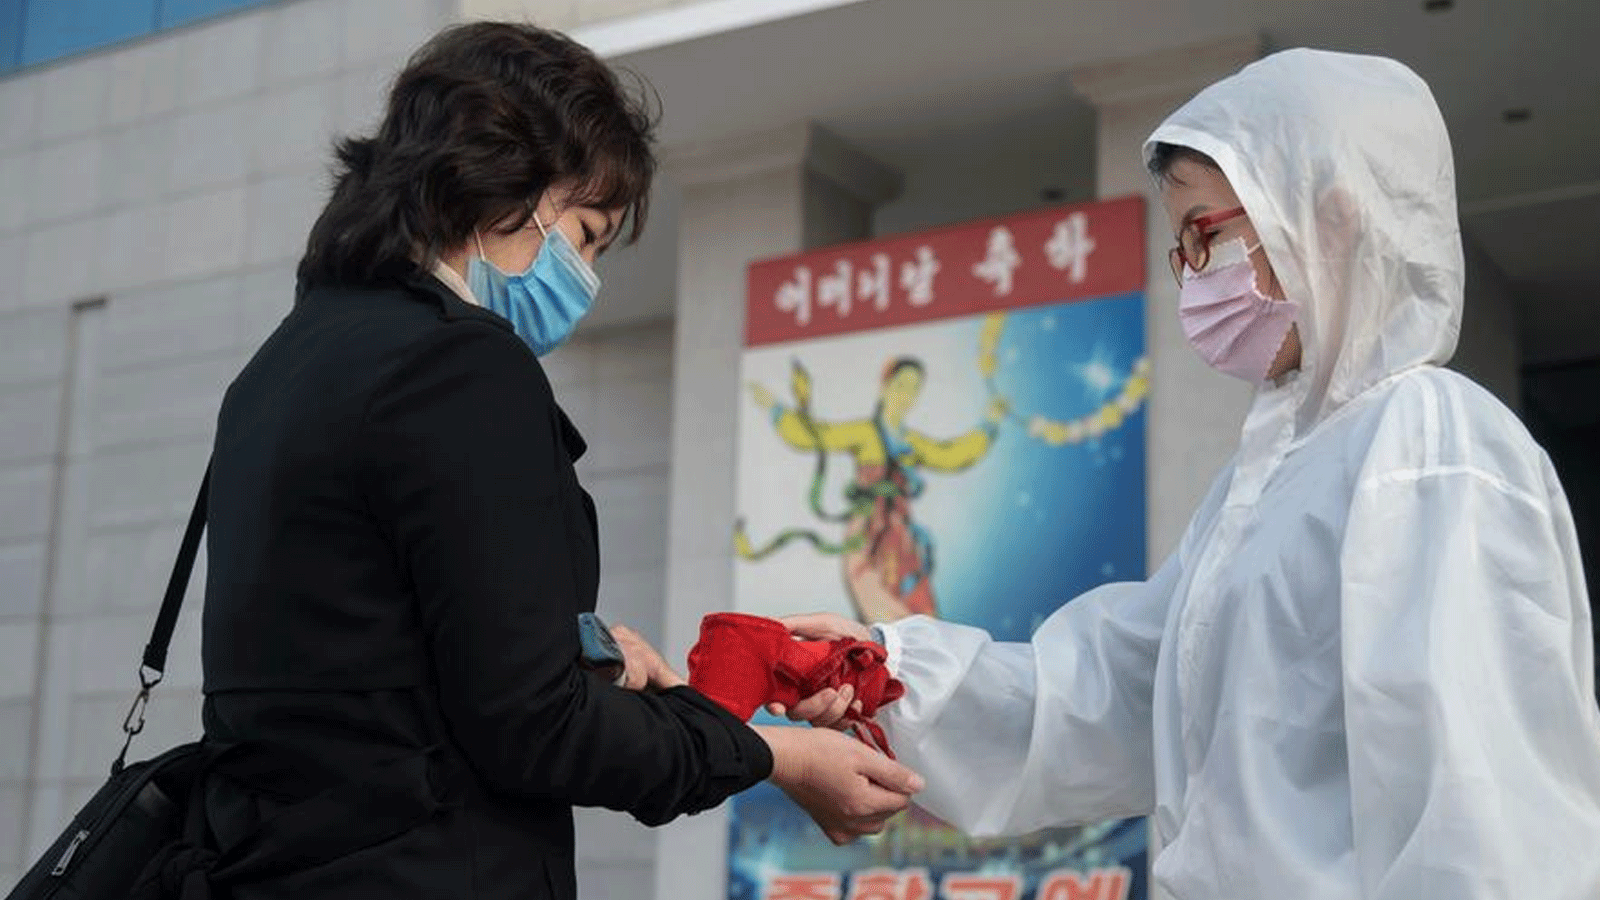 عاملة صحة تقيس الحرارة لمريضة في كوريا الشمالية